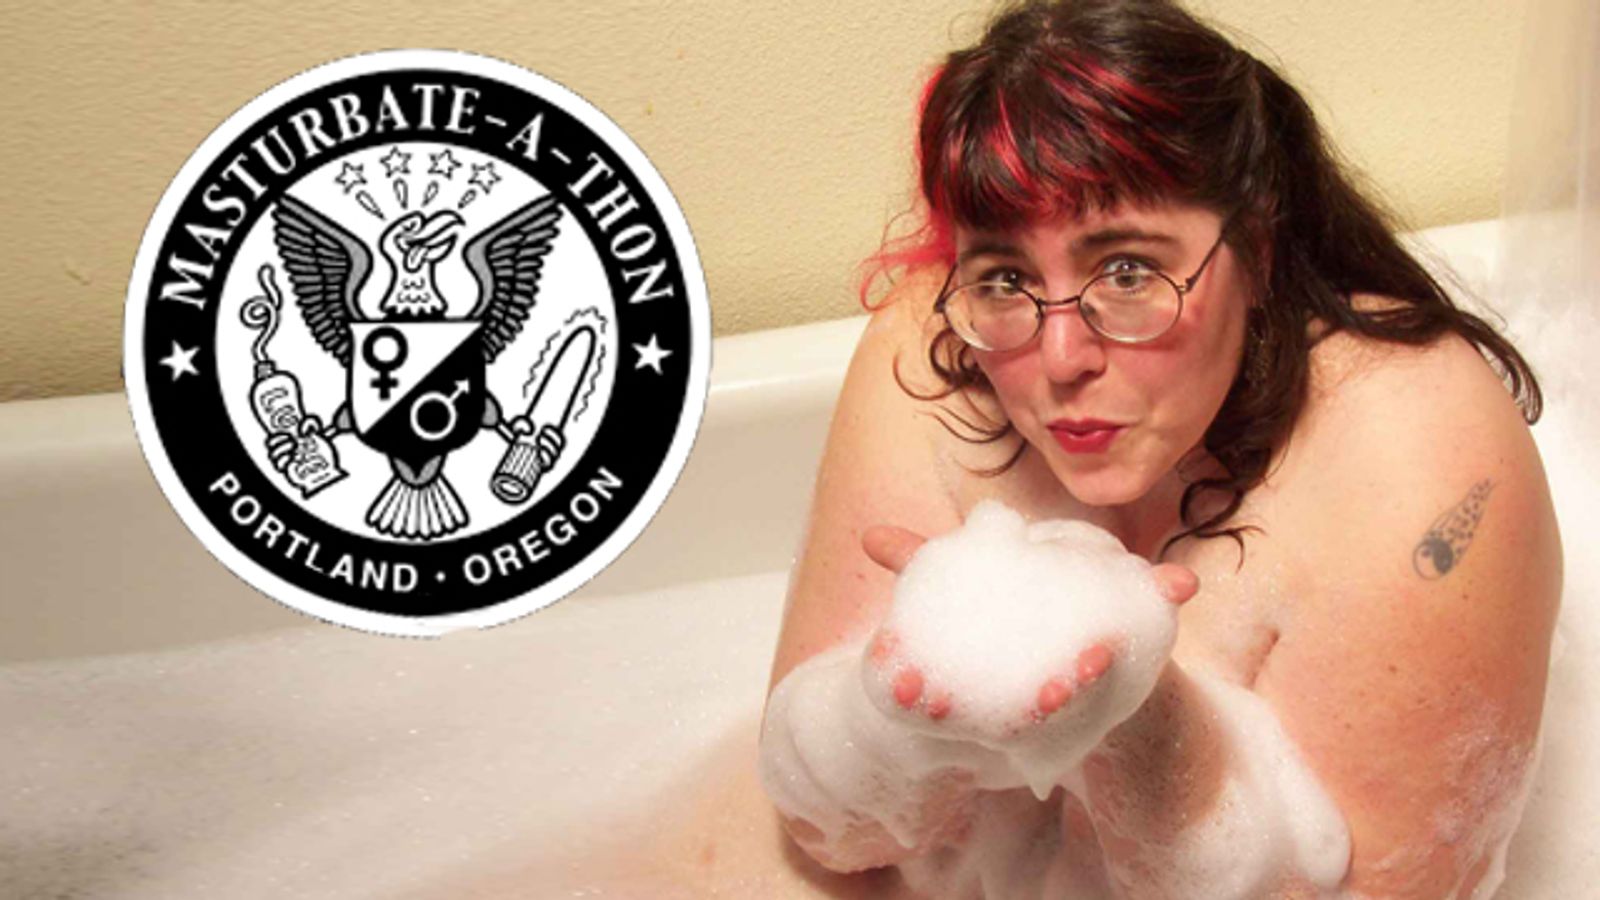 Darklady Announces New Venue, Date for 10th Annual Portland Masturbate-a-thon